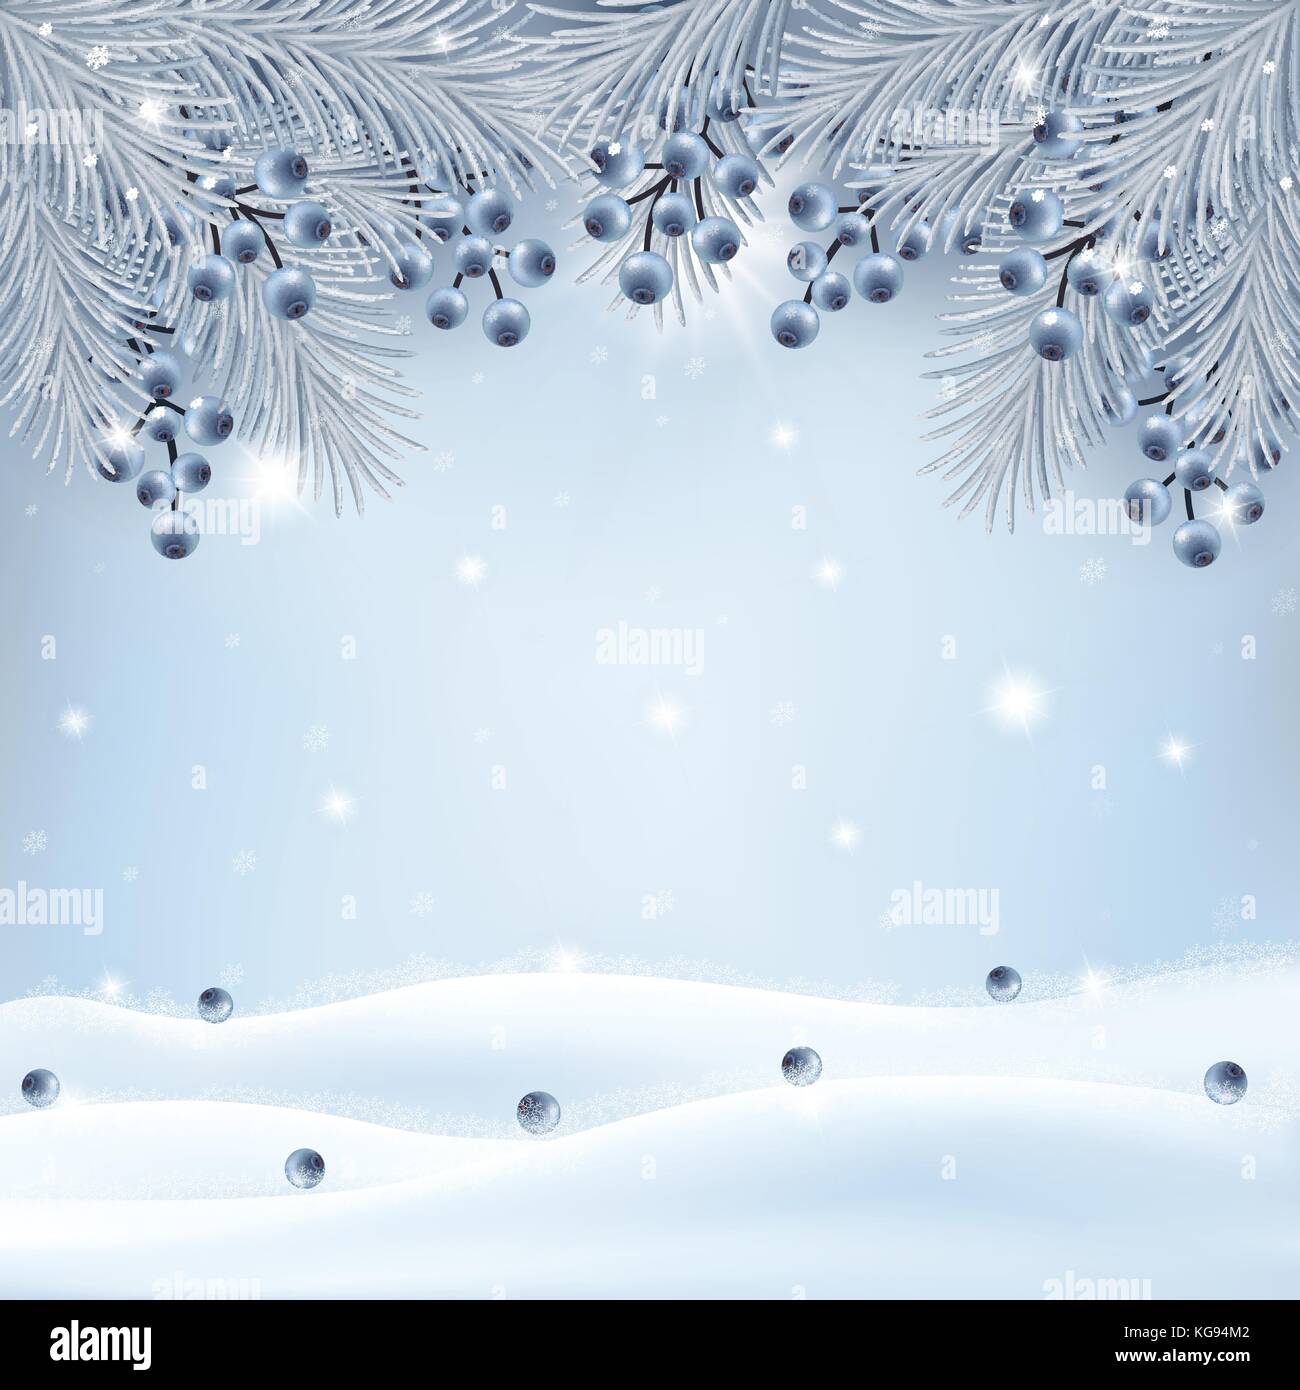 Weihnachten Hintergrund mit silberner Farbe tannenzweigen, blueberry Dekoration und funkelnde Schneefall. Vector Illustration. Stock Vektor